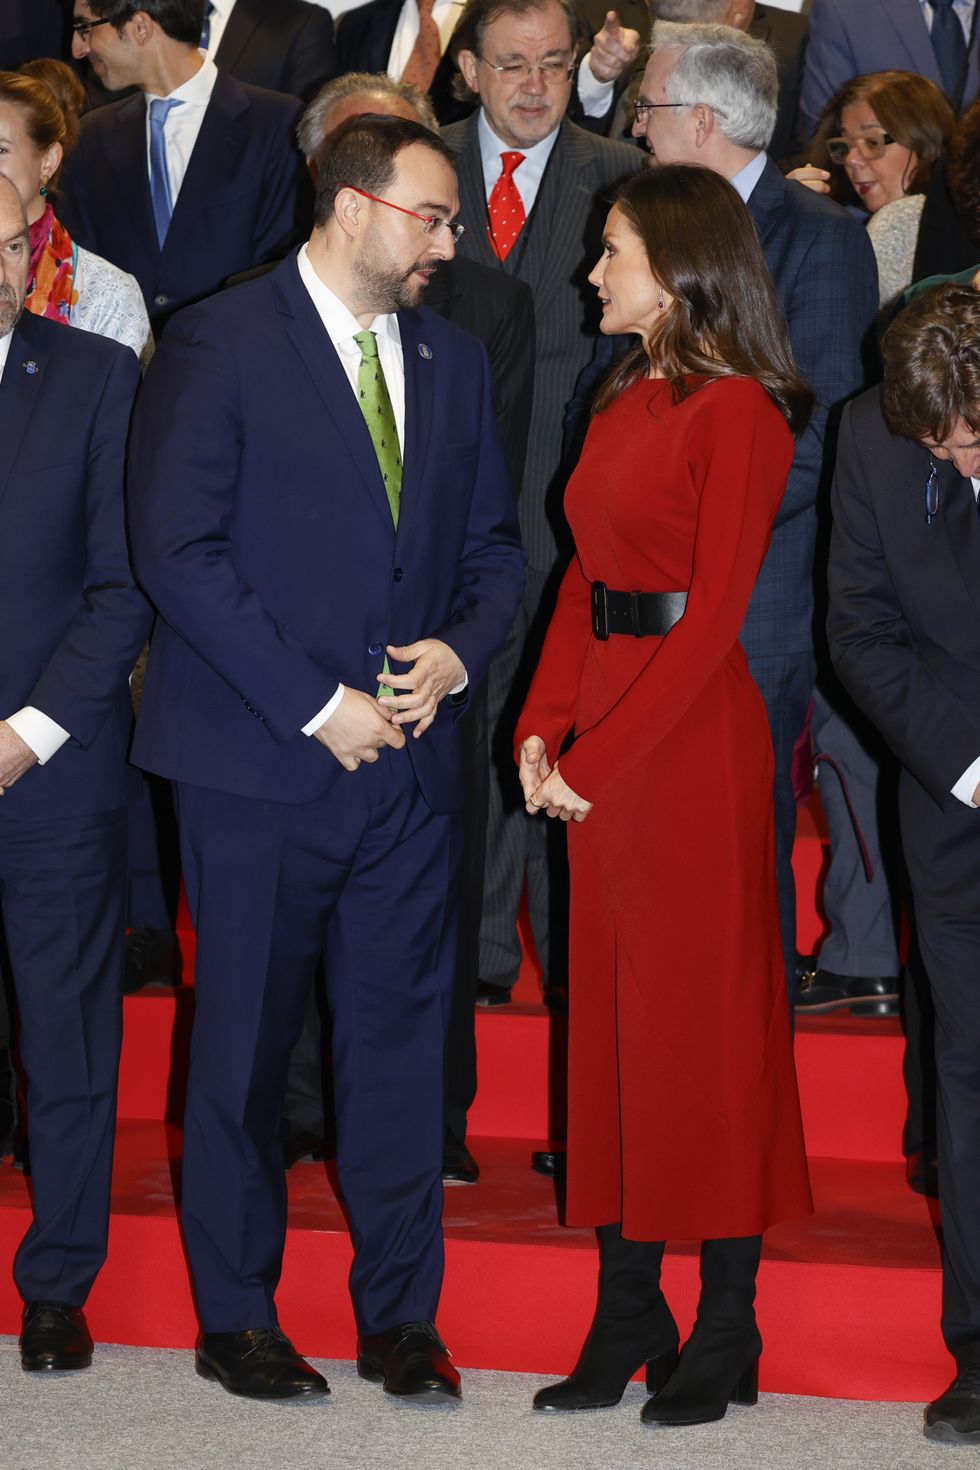 la reina letizia con vestido rojo y botas altas para navidad